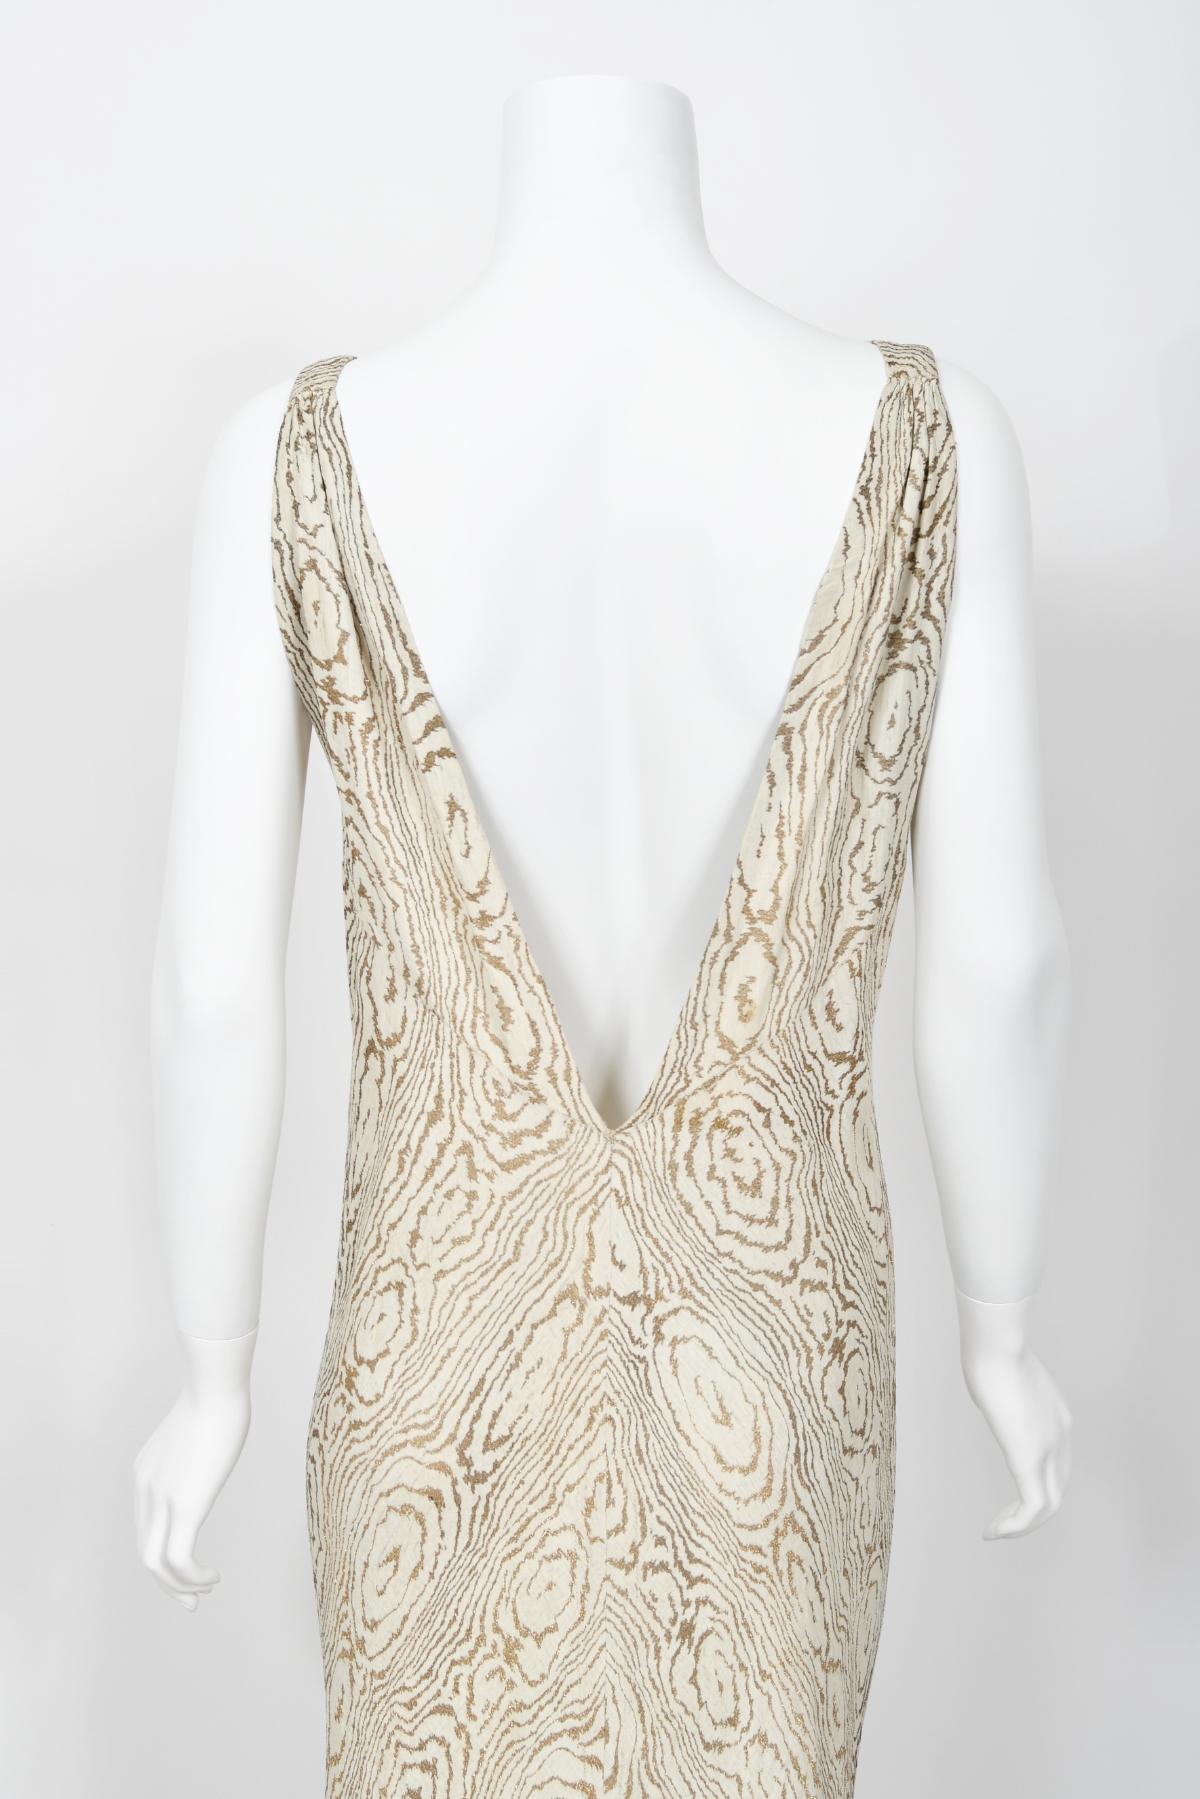 1930's Metallic Wood-Patterned Lamé Deco Appliqué Bias-Cut Trained Bridal Gown  12